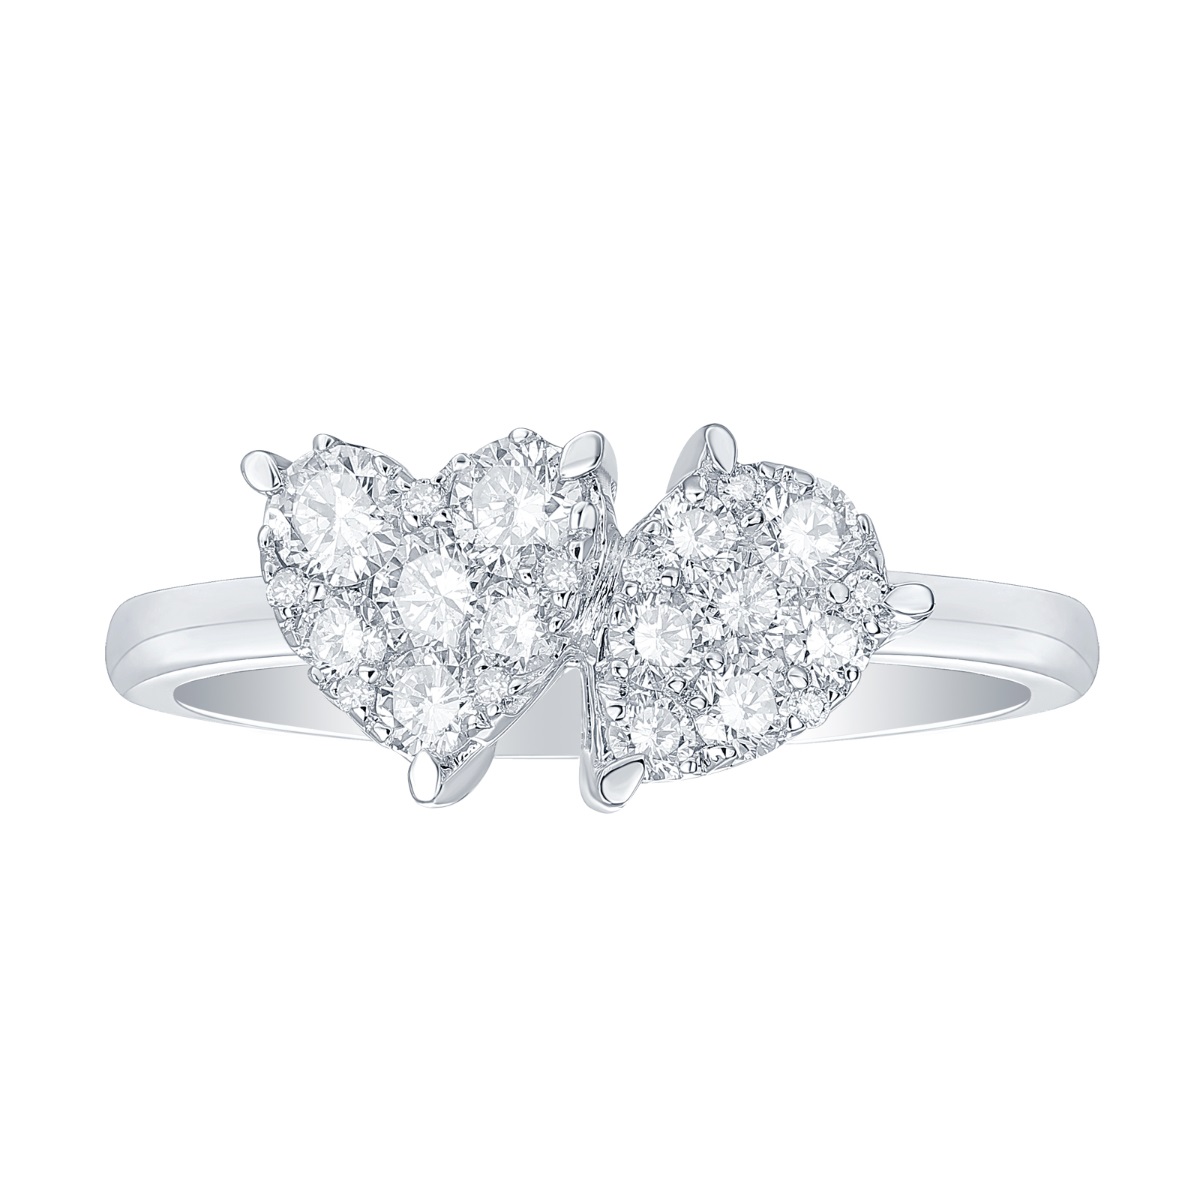 R37084WHT – 18K White Gold Diamond Ring, 0.69 TCW